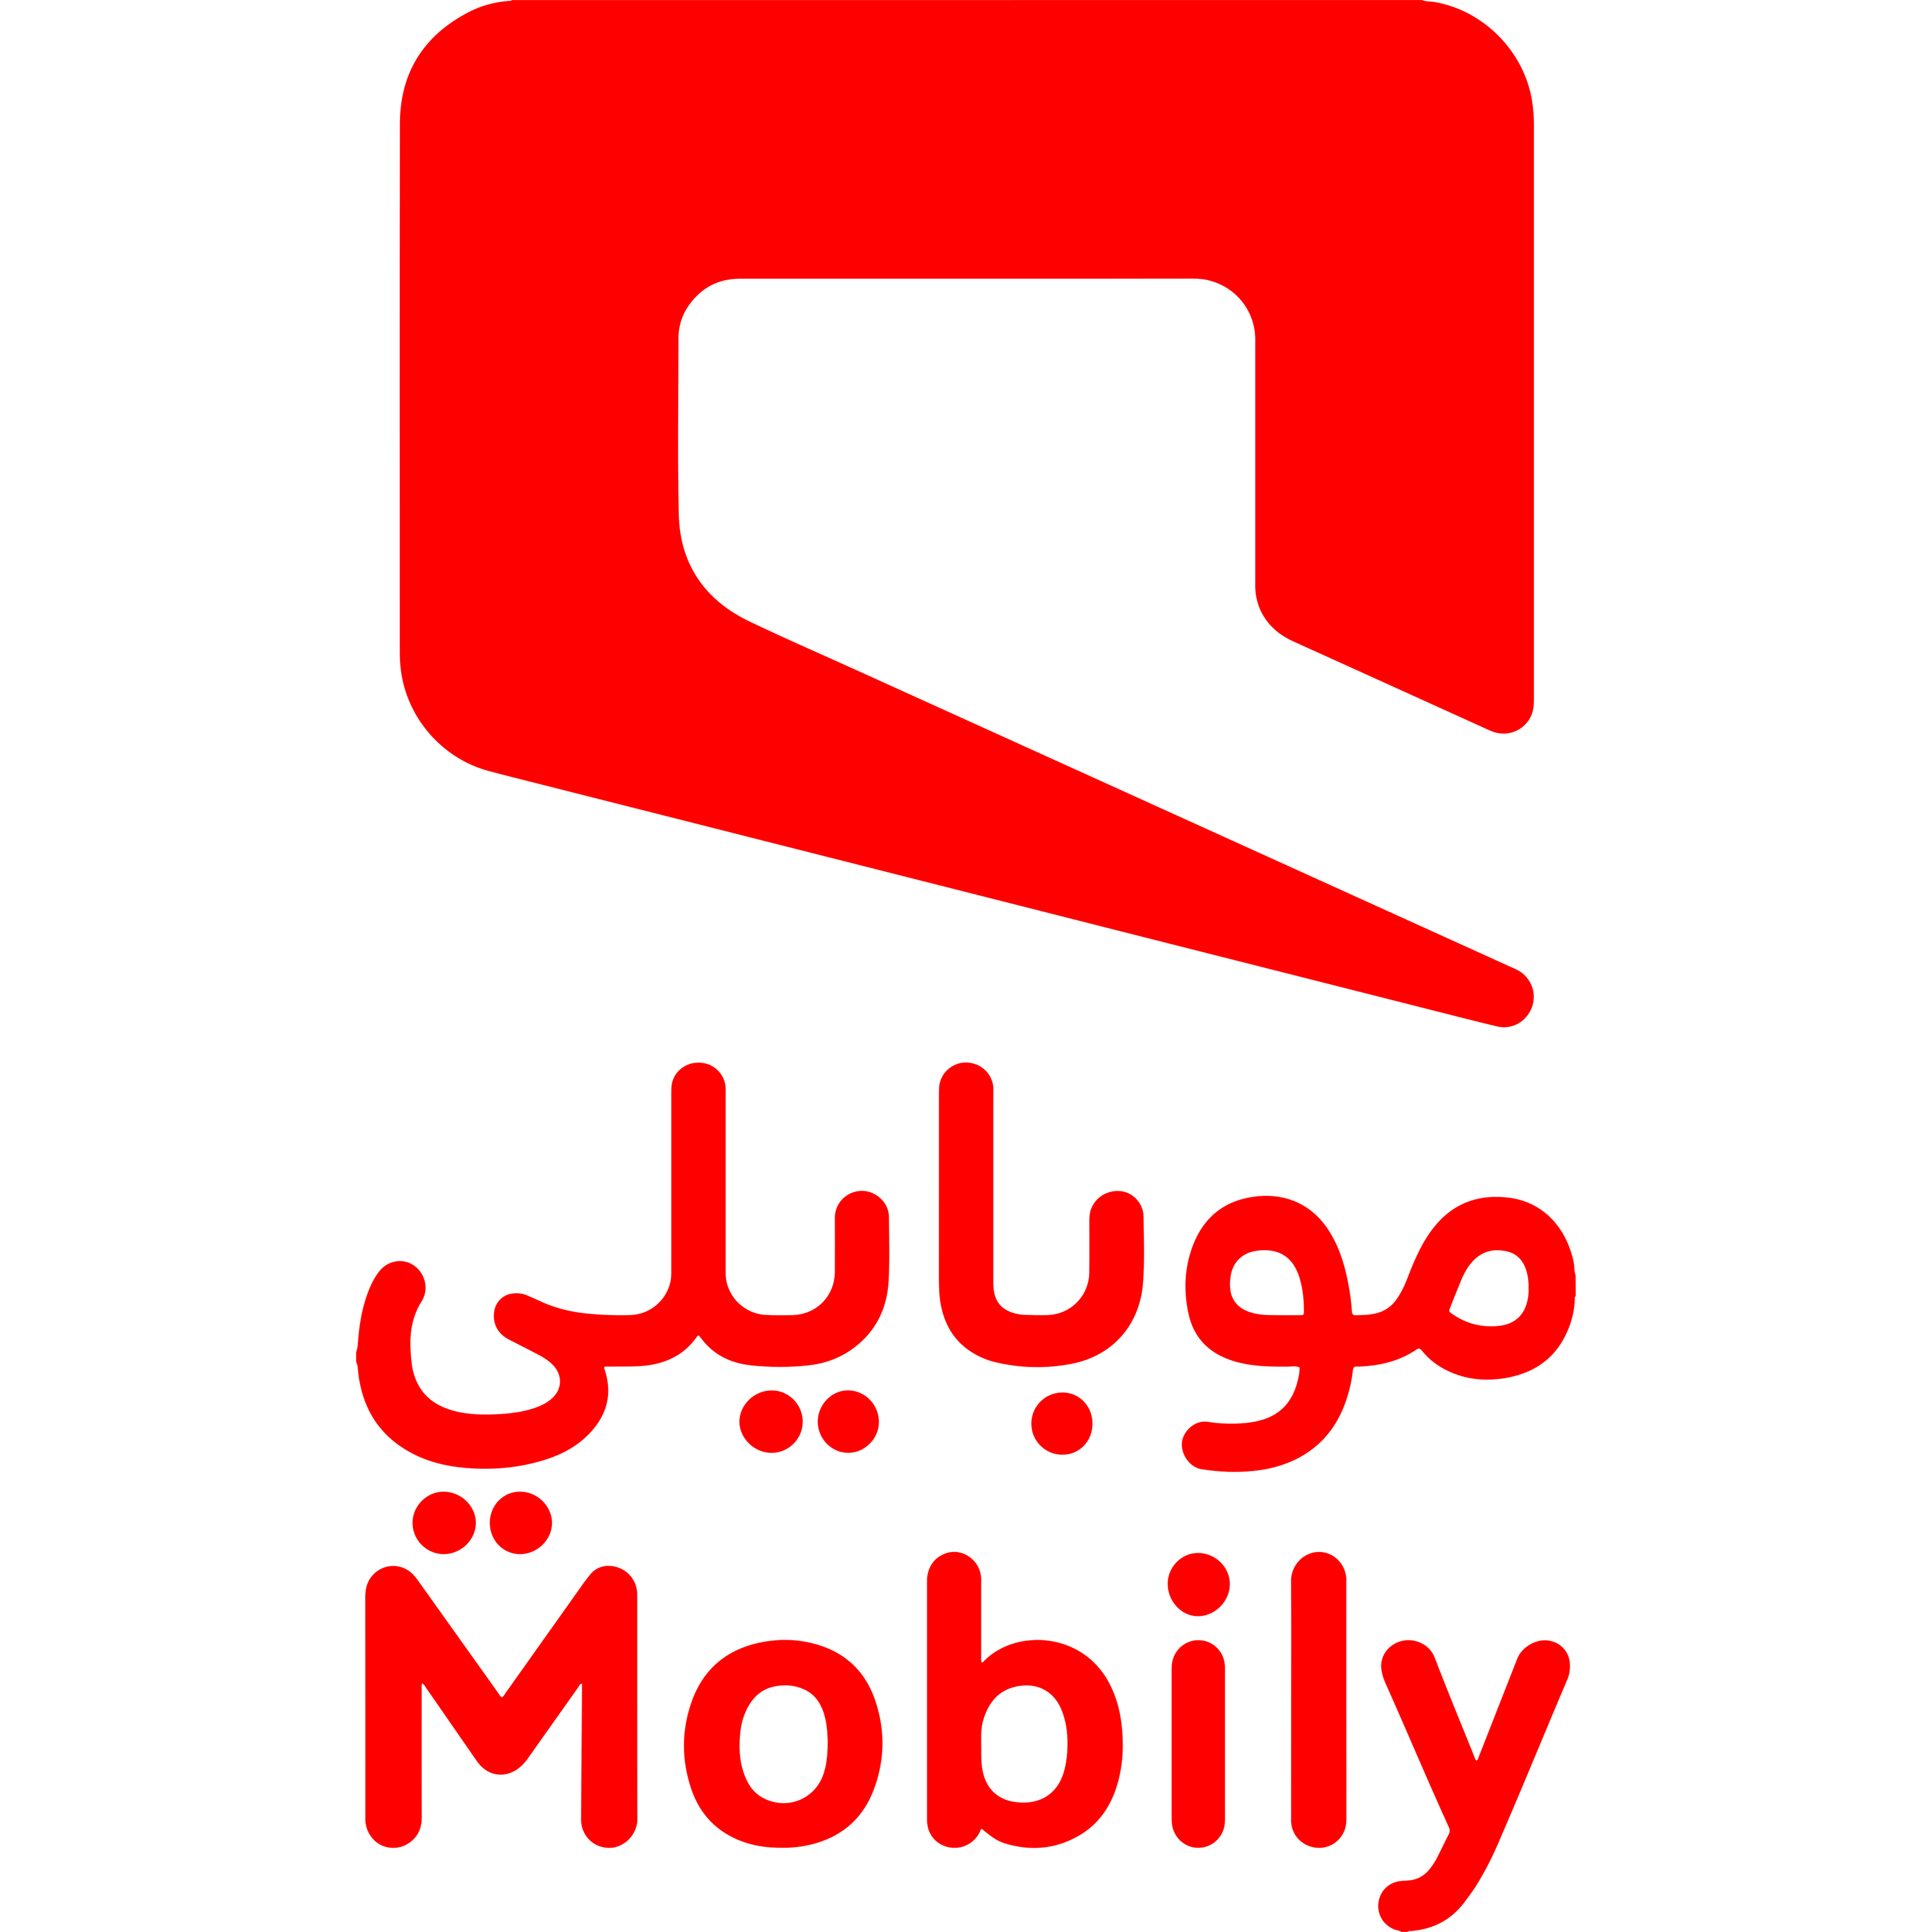 Mobily Logo  Transparent Photo